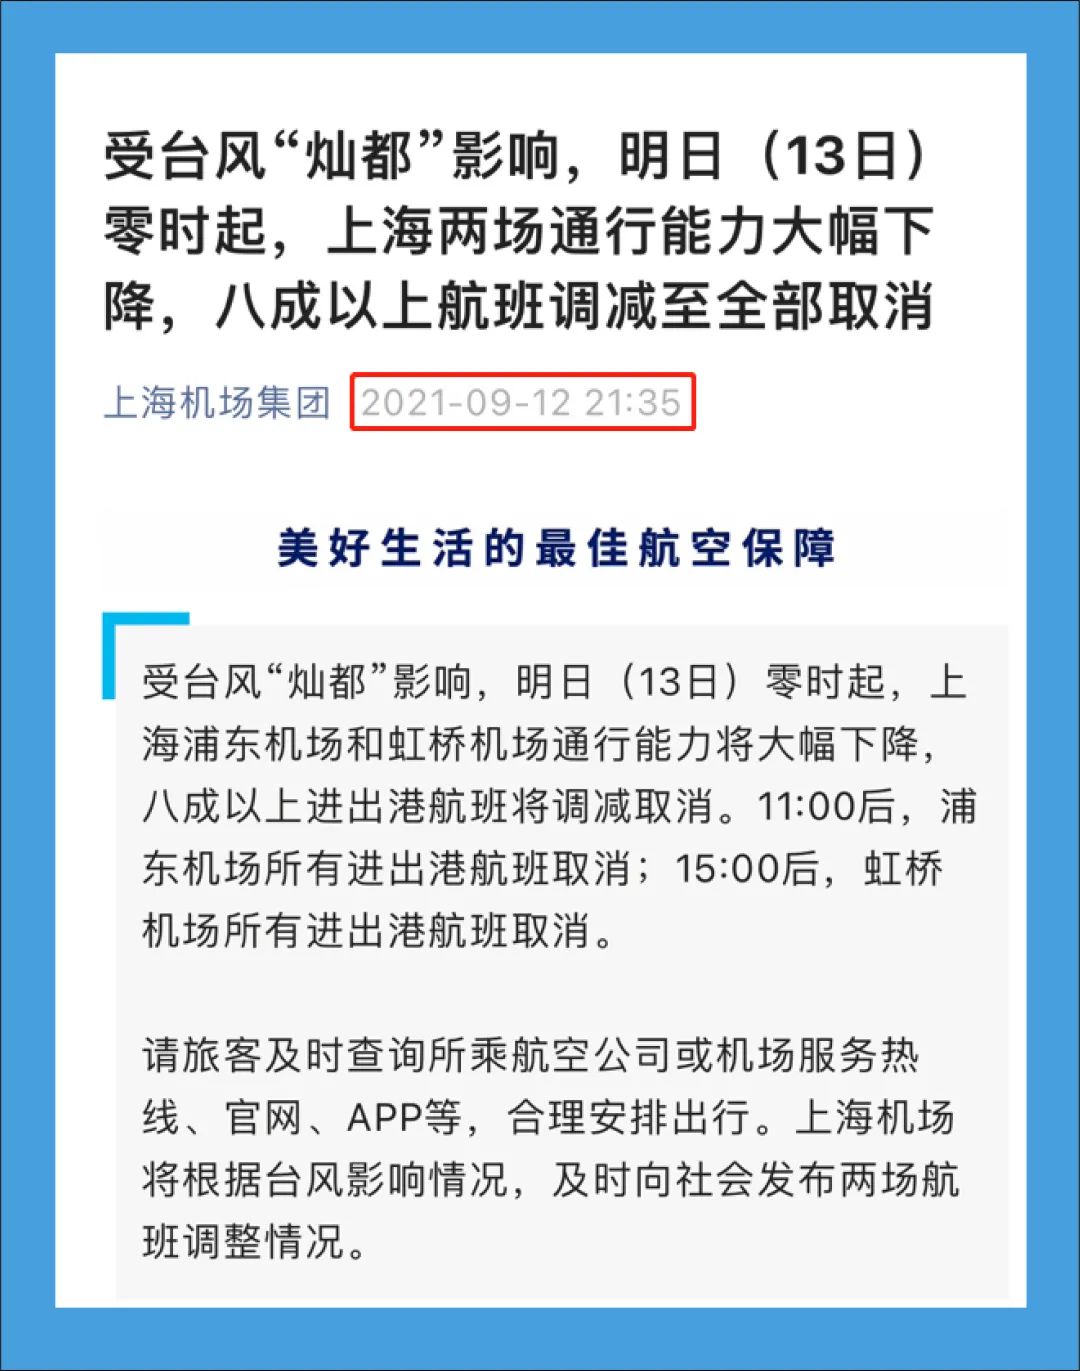 【注意】上海浦东和虹桥机场运行正常，网传信息不属实插图1